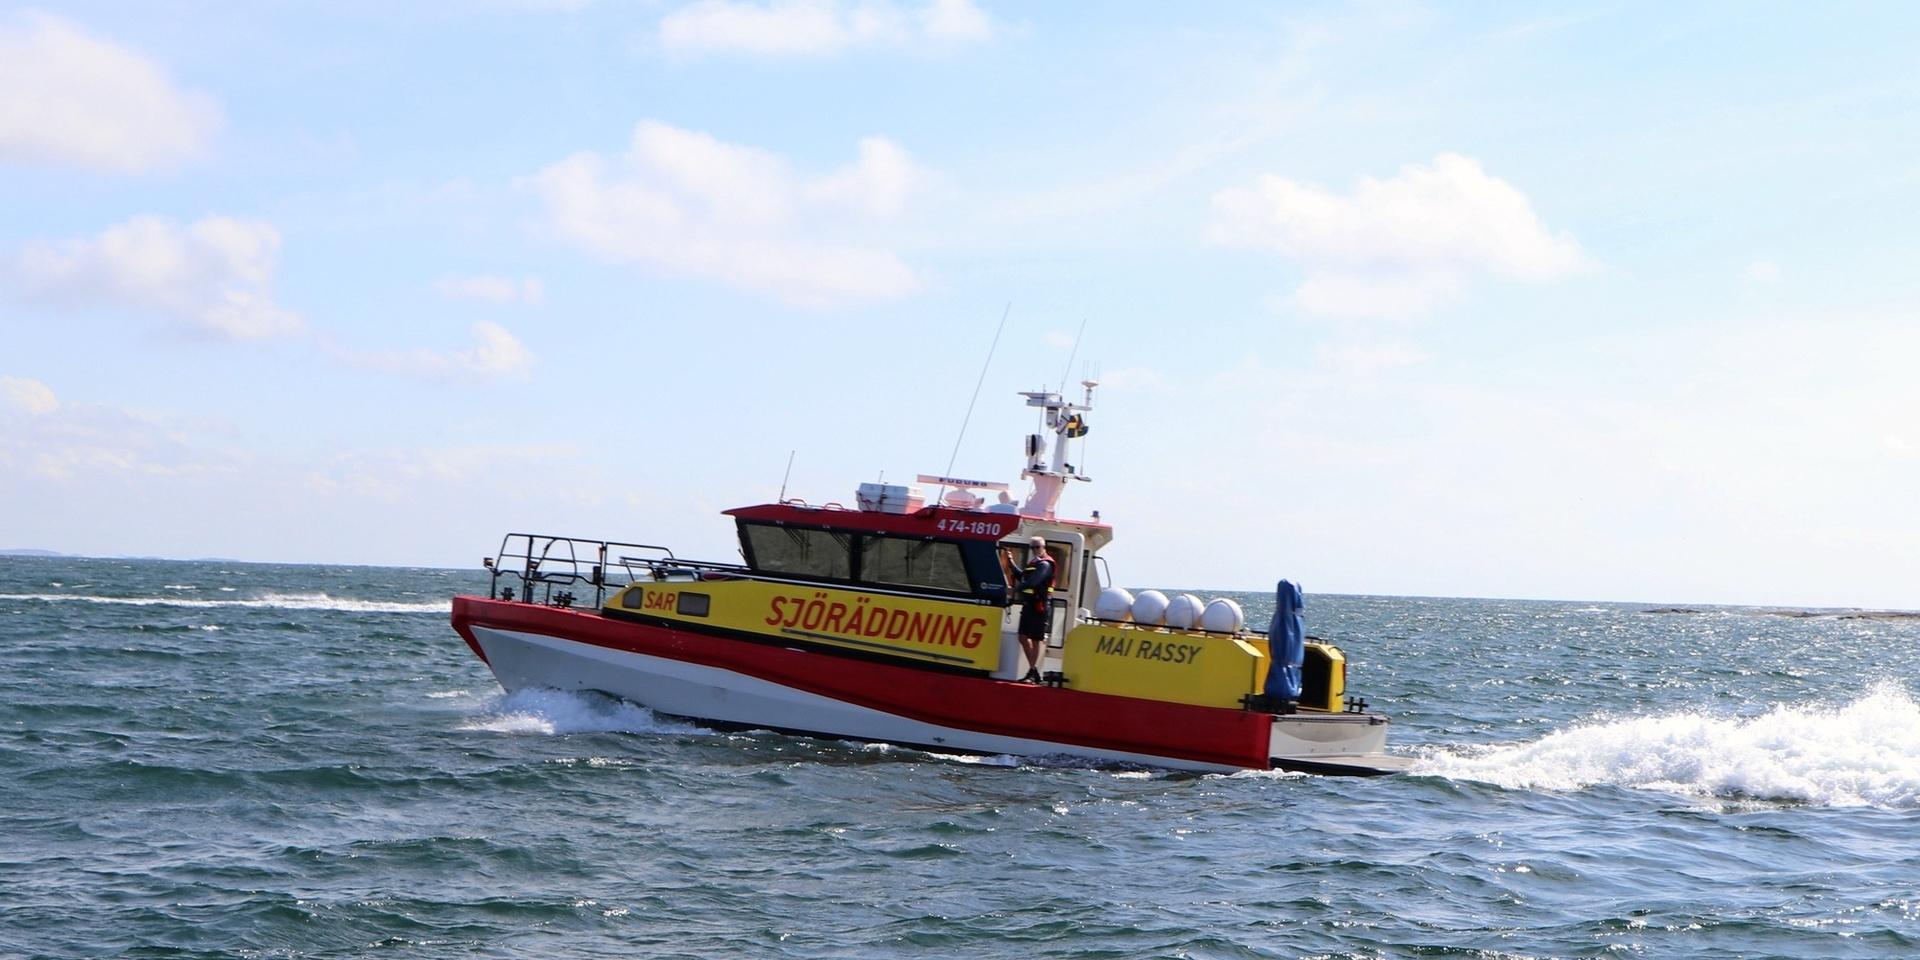 Sjöräddningssällskapet sökte efter båten som i helgen försvann från stranden i Mellbystrand. Bilden har tagits i ett annat sammanhang.